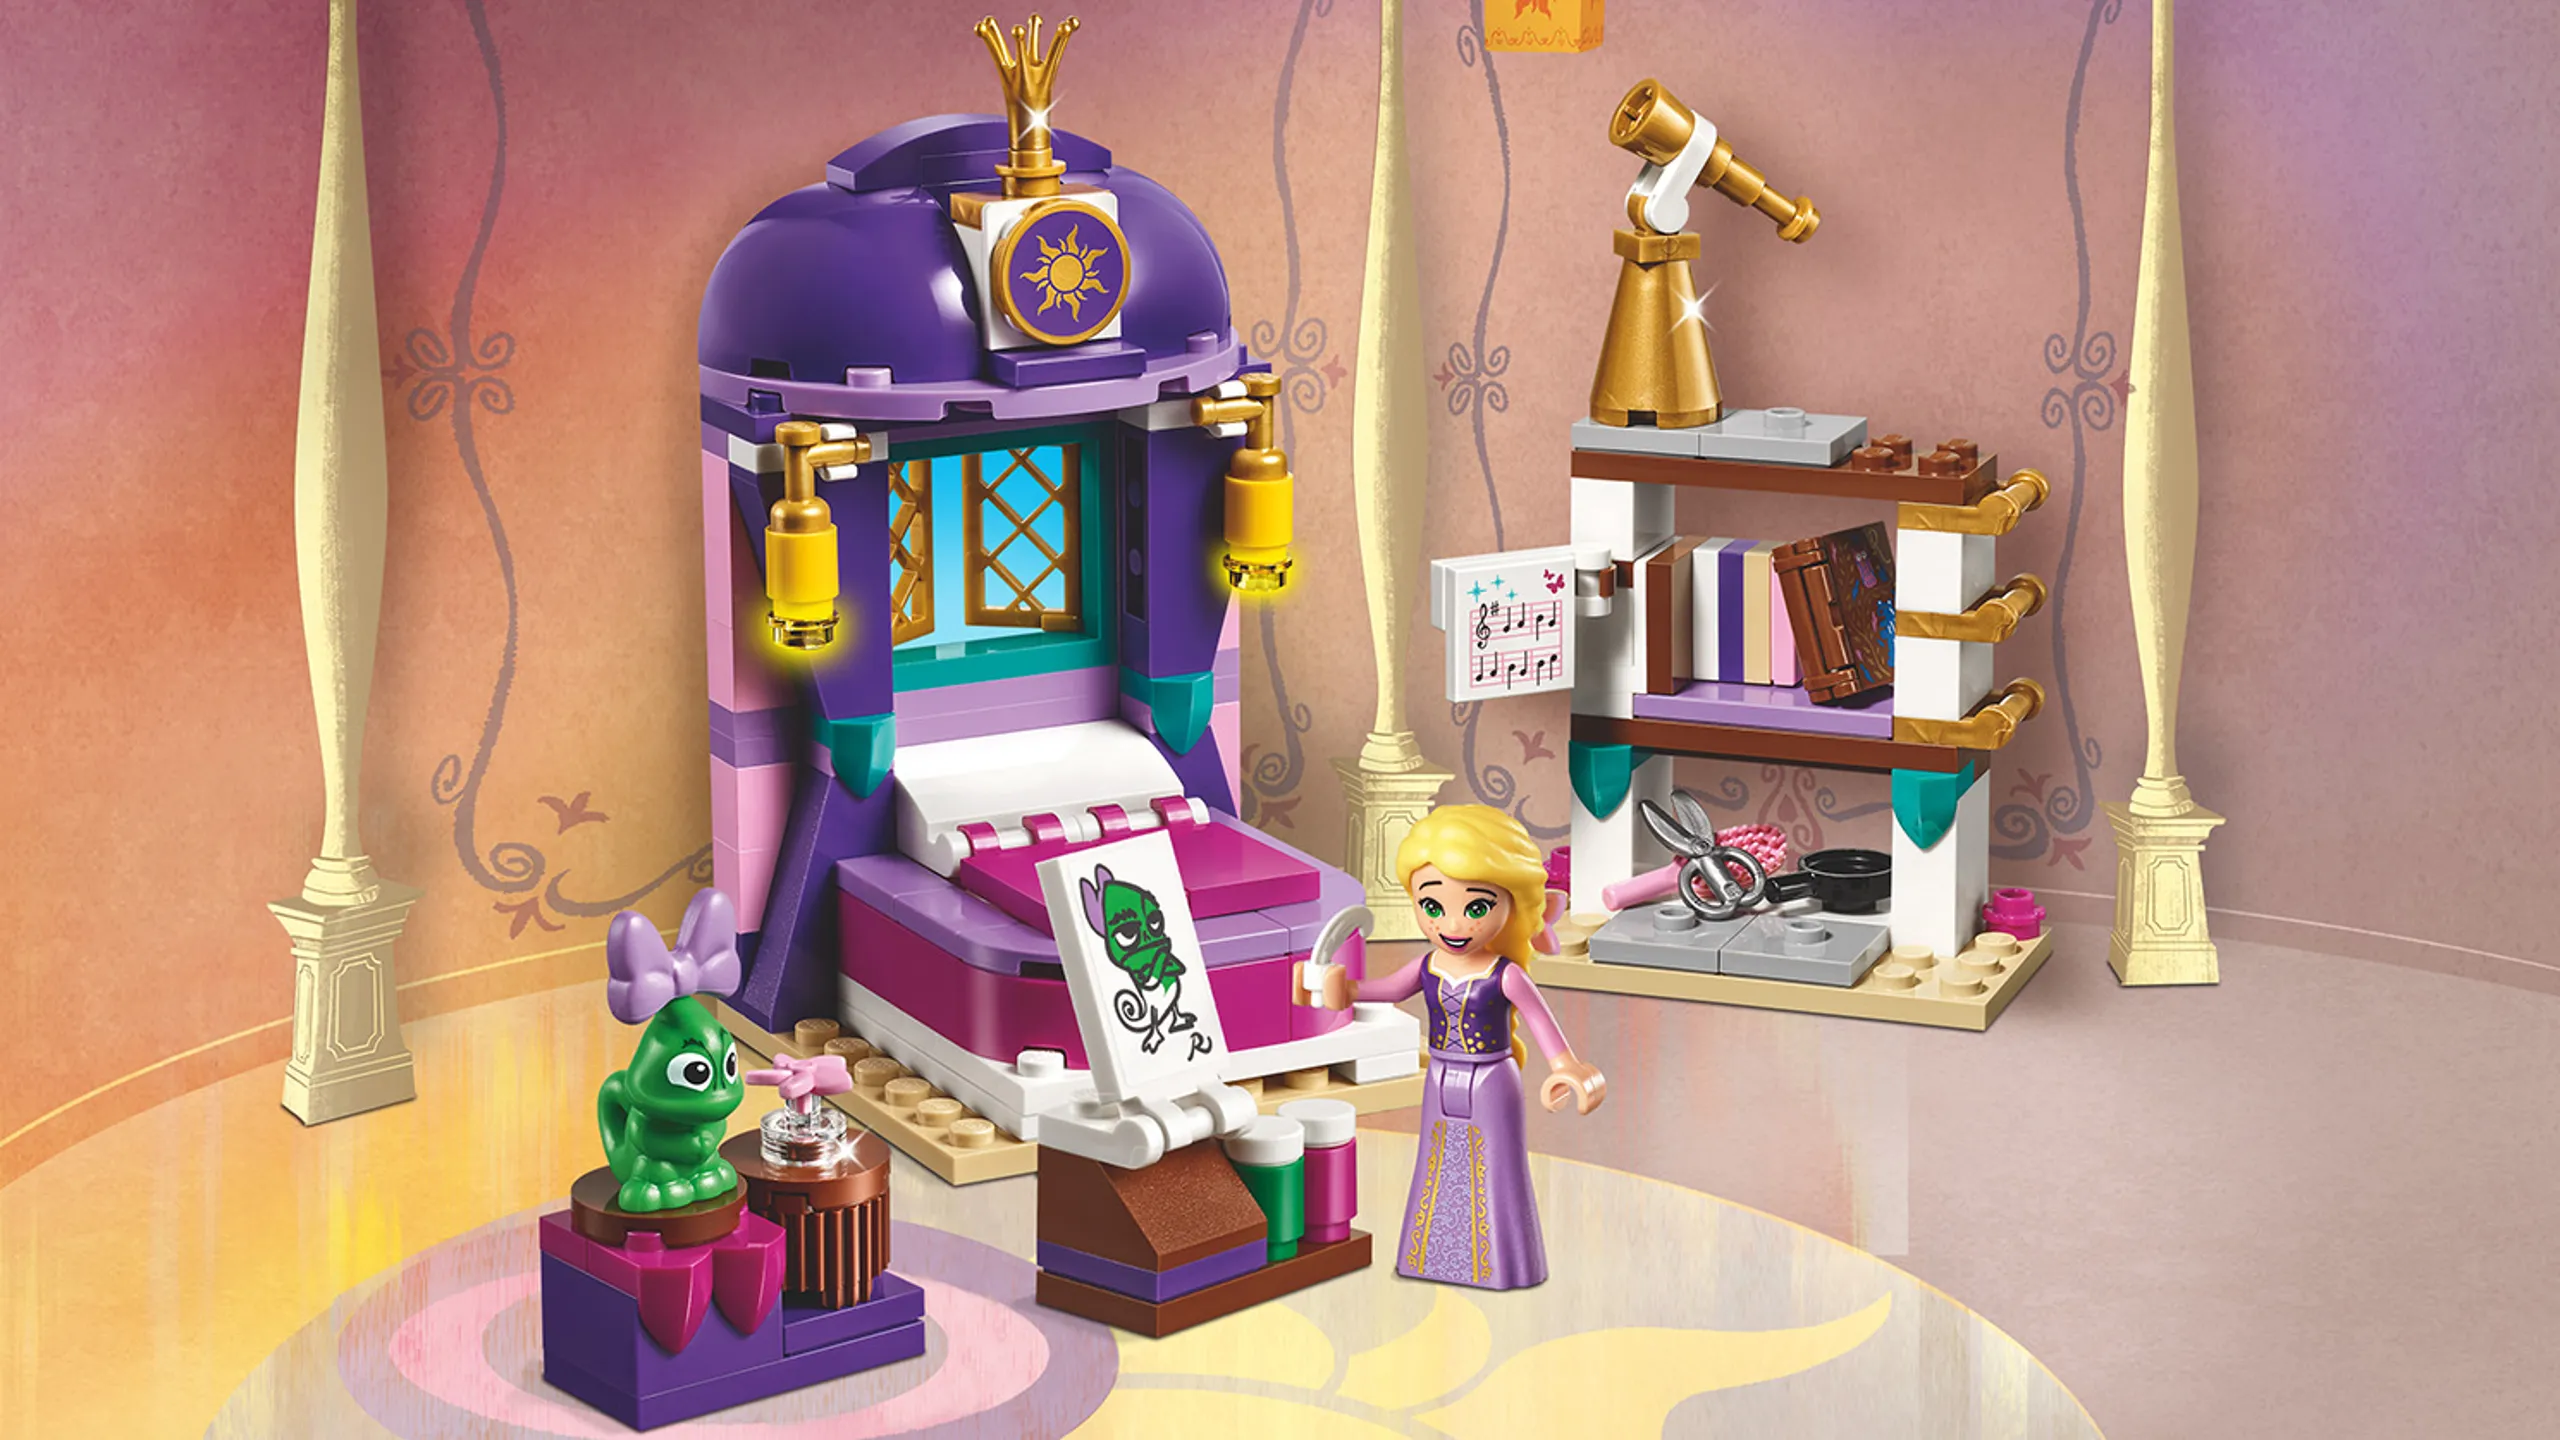 LEGO Disney - 41156 Rapunzel's Castle Bedroom - Rapunzel paints her green lizard friend in her bedroom.